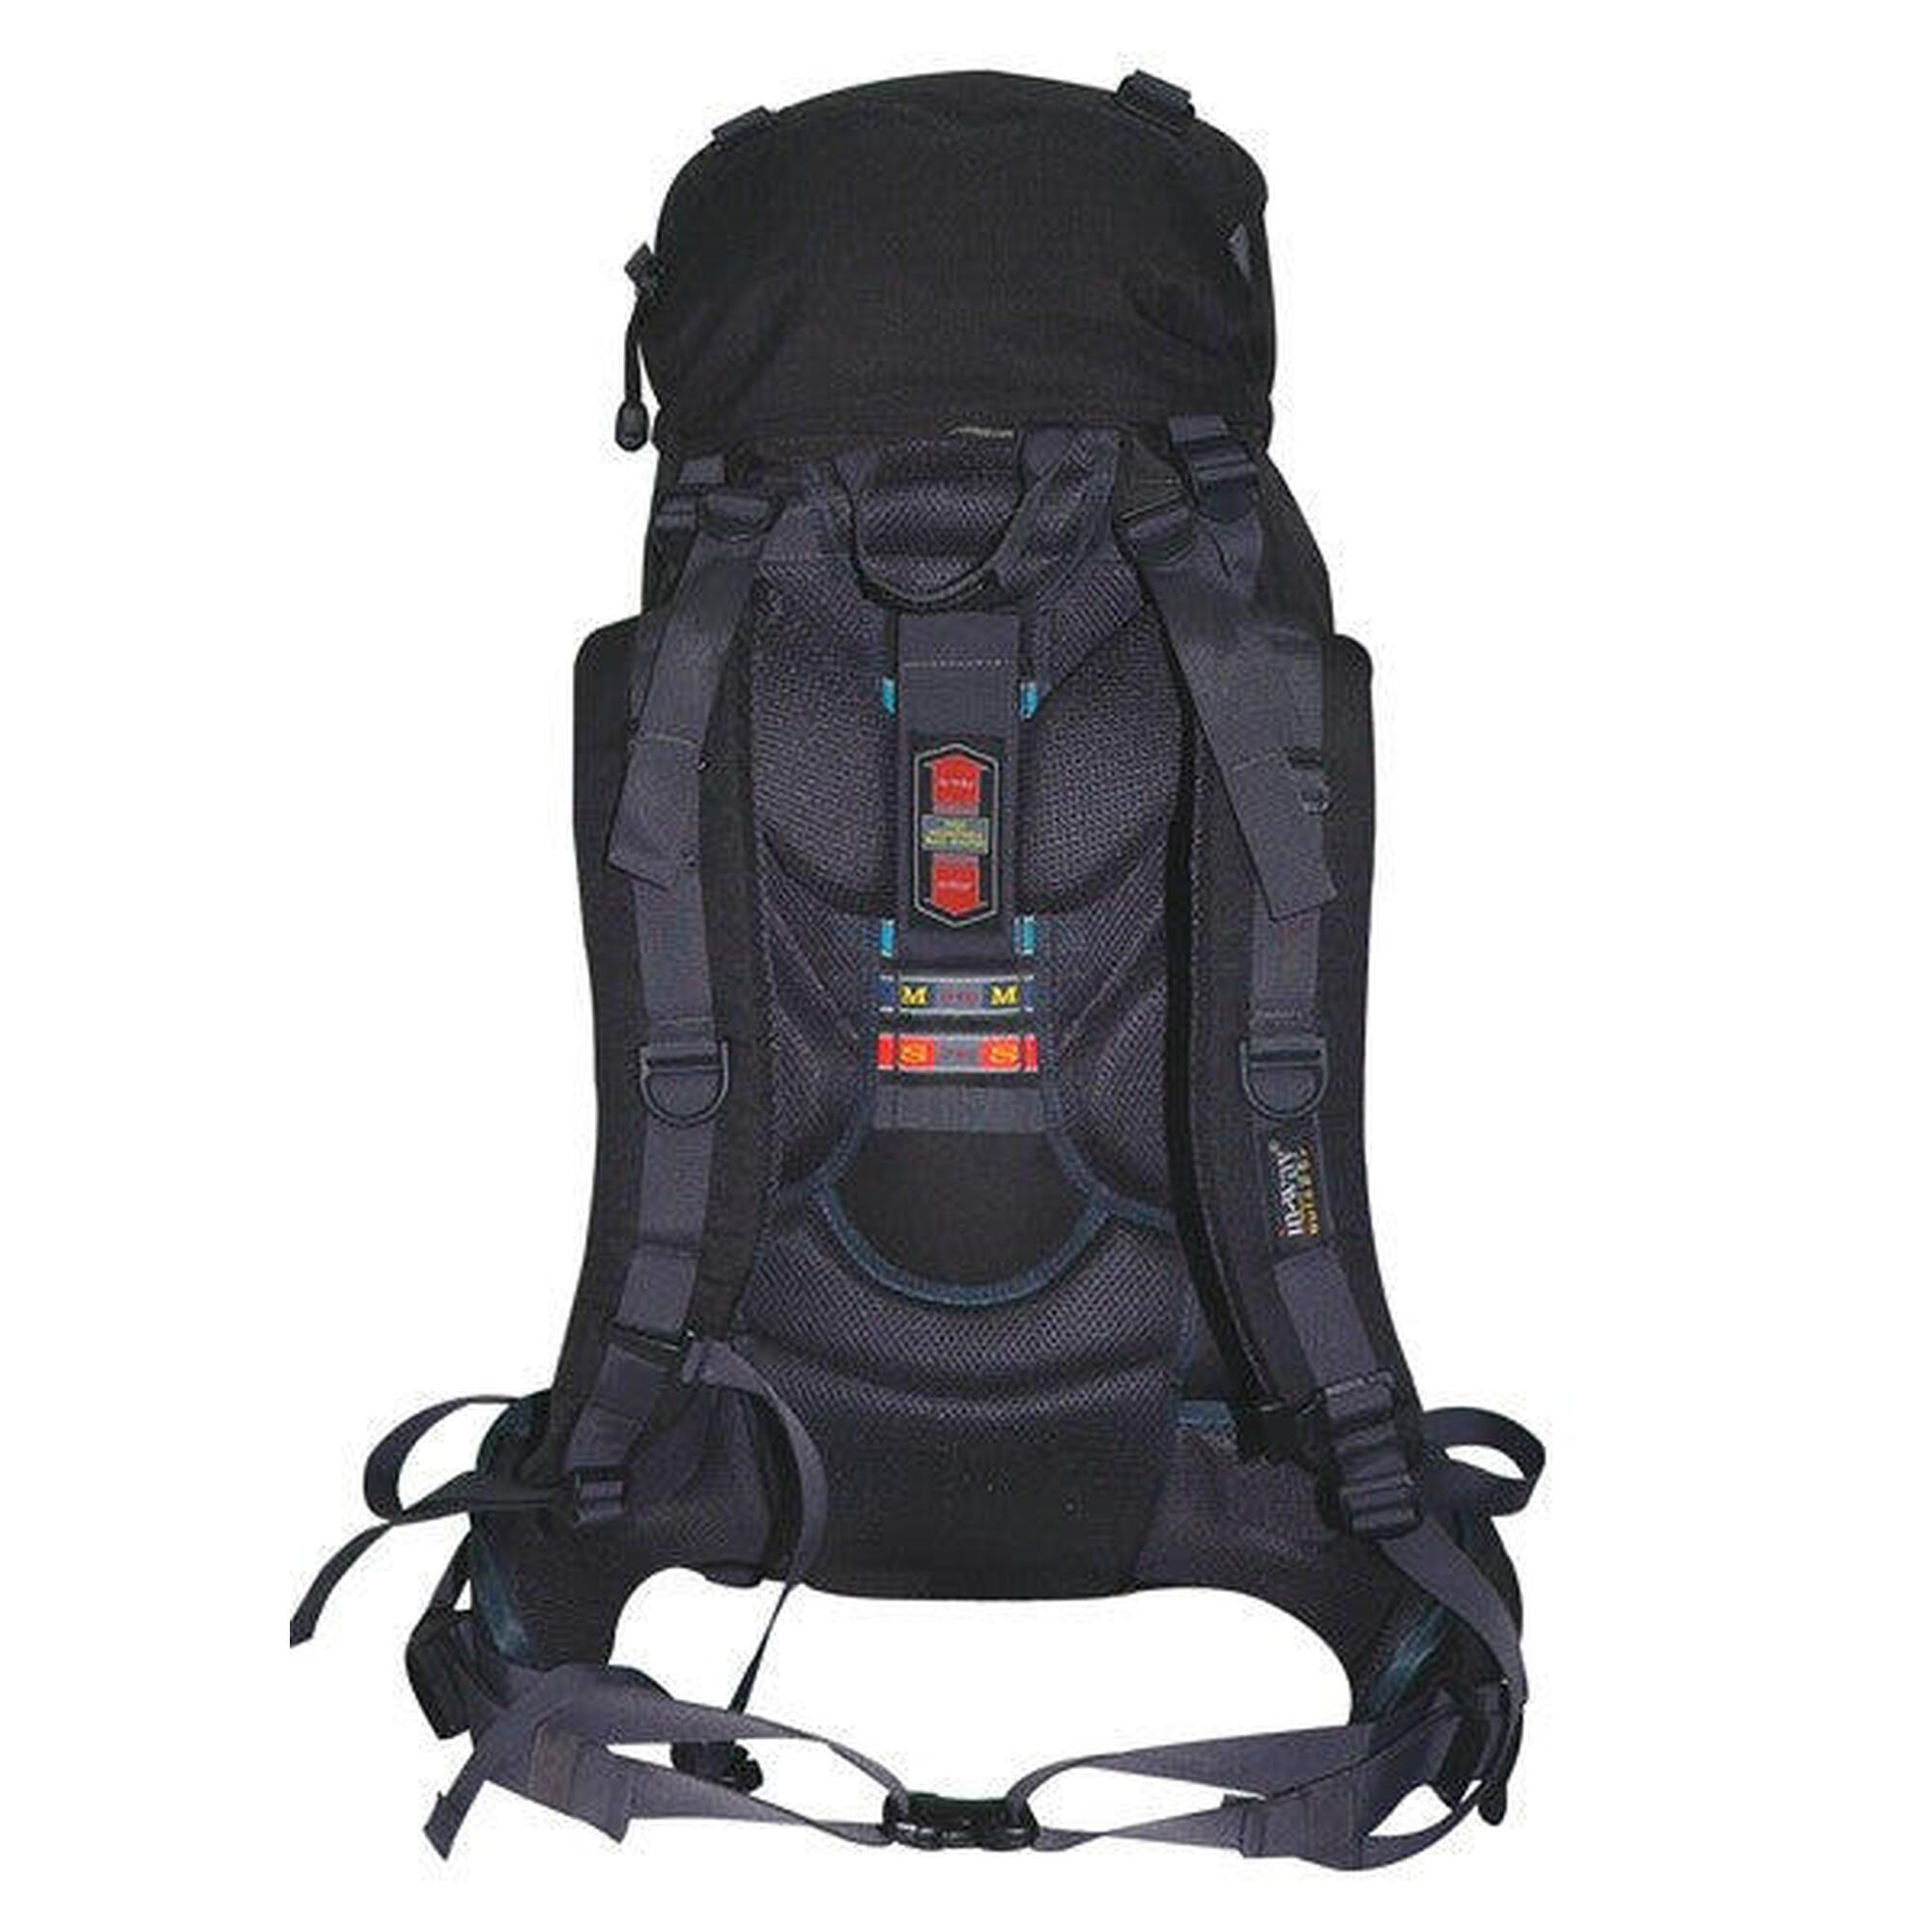 Inway Alpine 50+10 Trekking Backpack 50L +10L - Blue